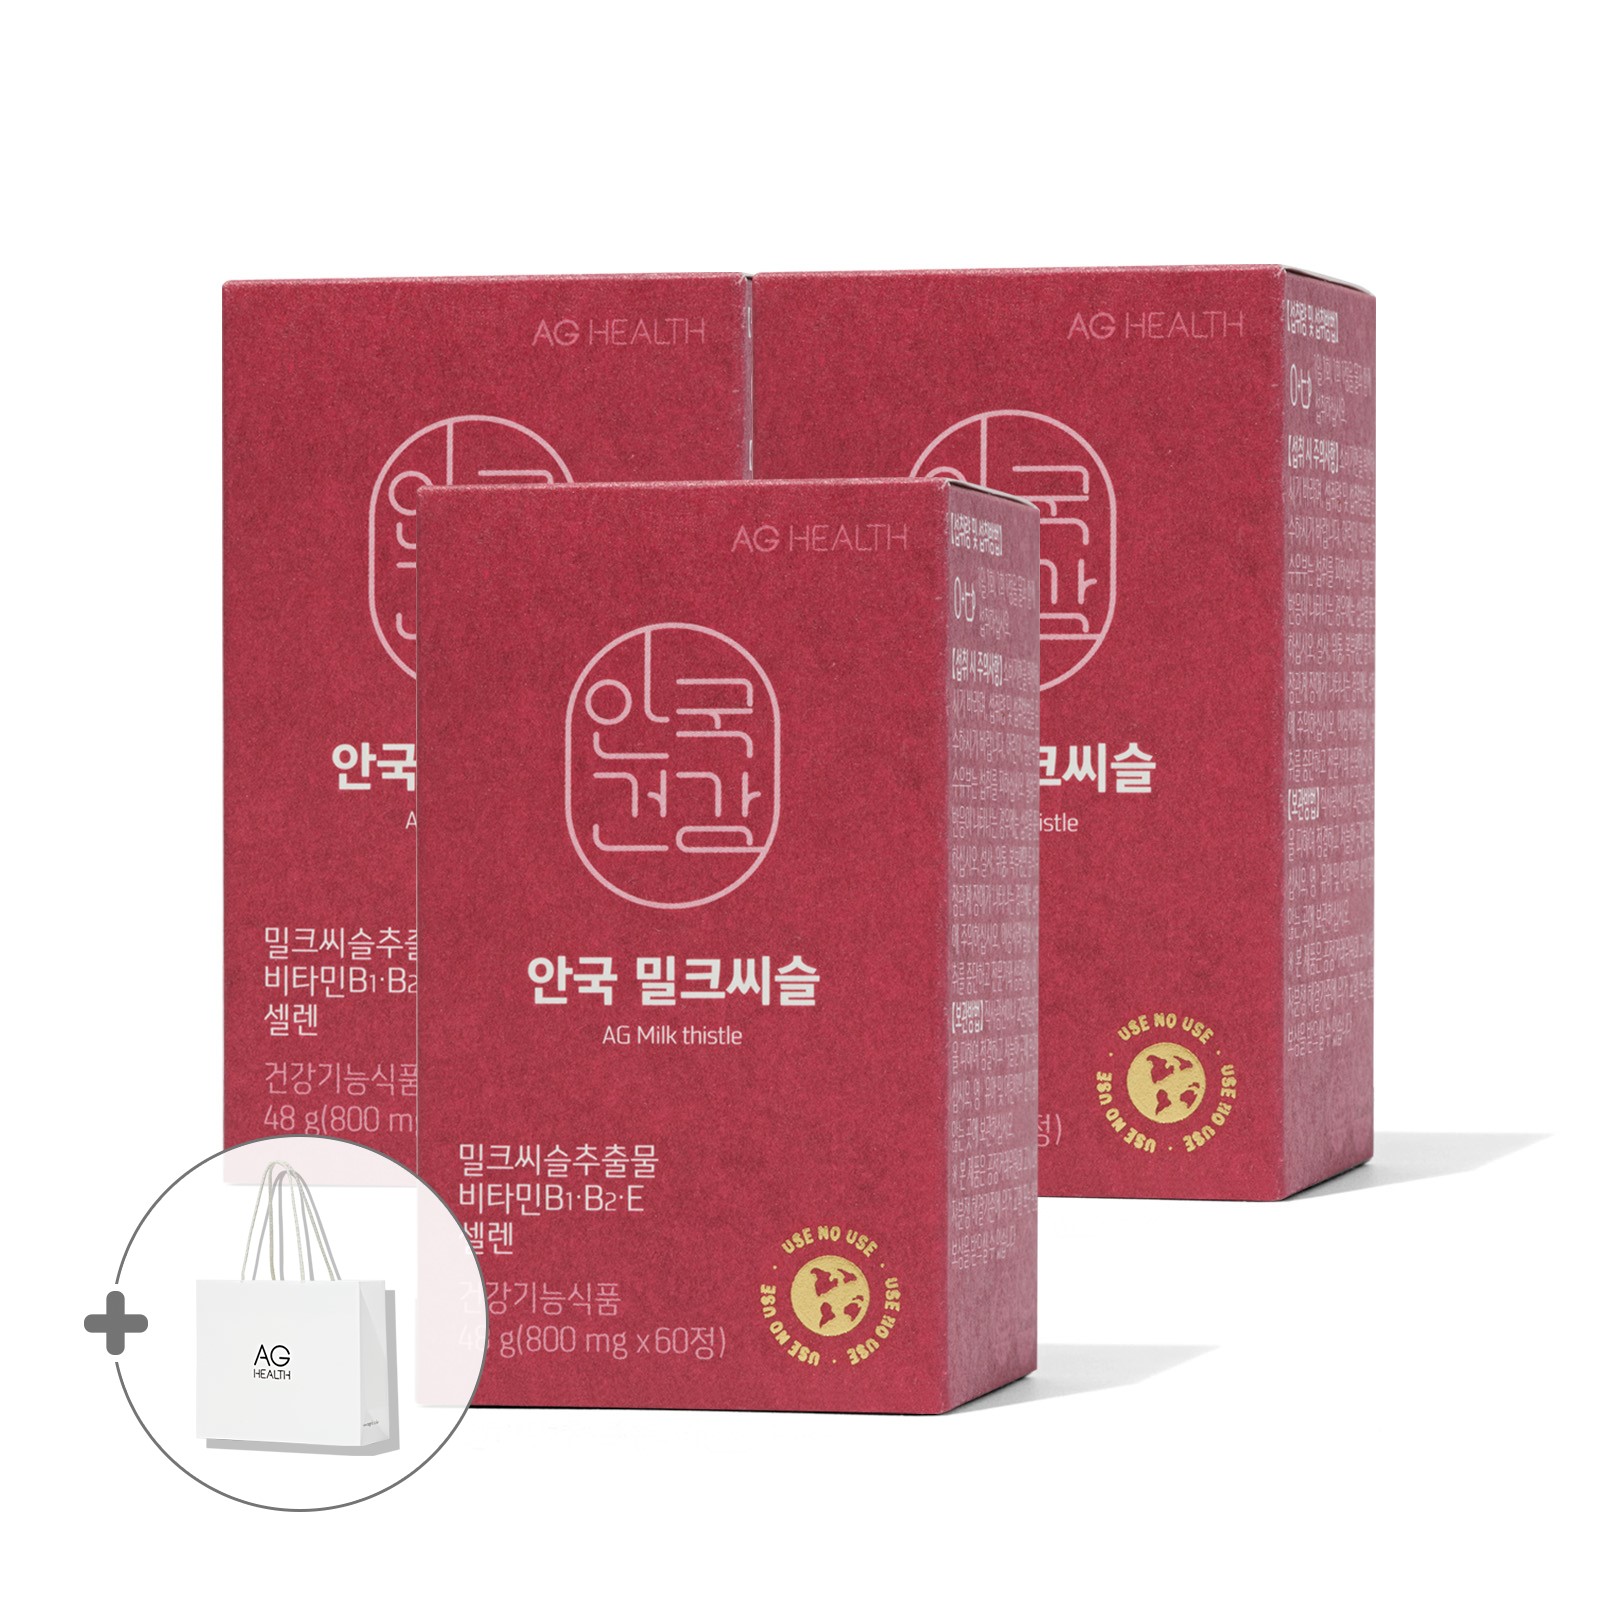 [안국건강] 밀크씨슬 60정 3박스 (6개월분) +쇼핑백 증정